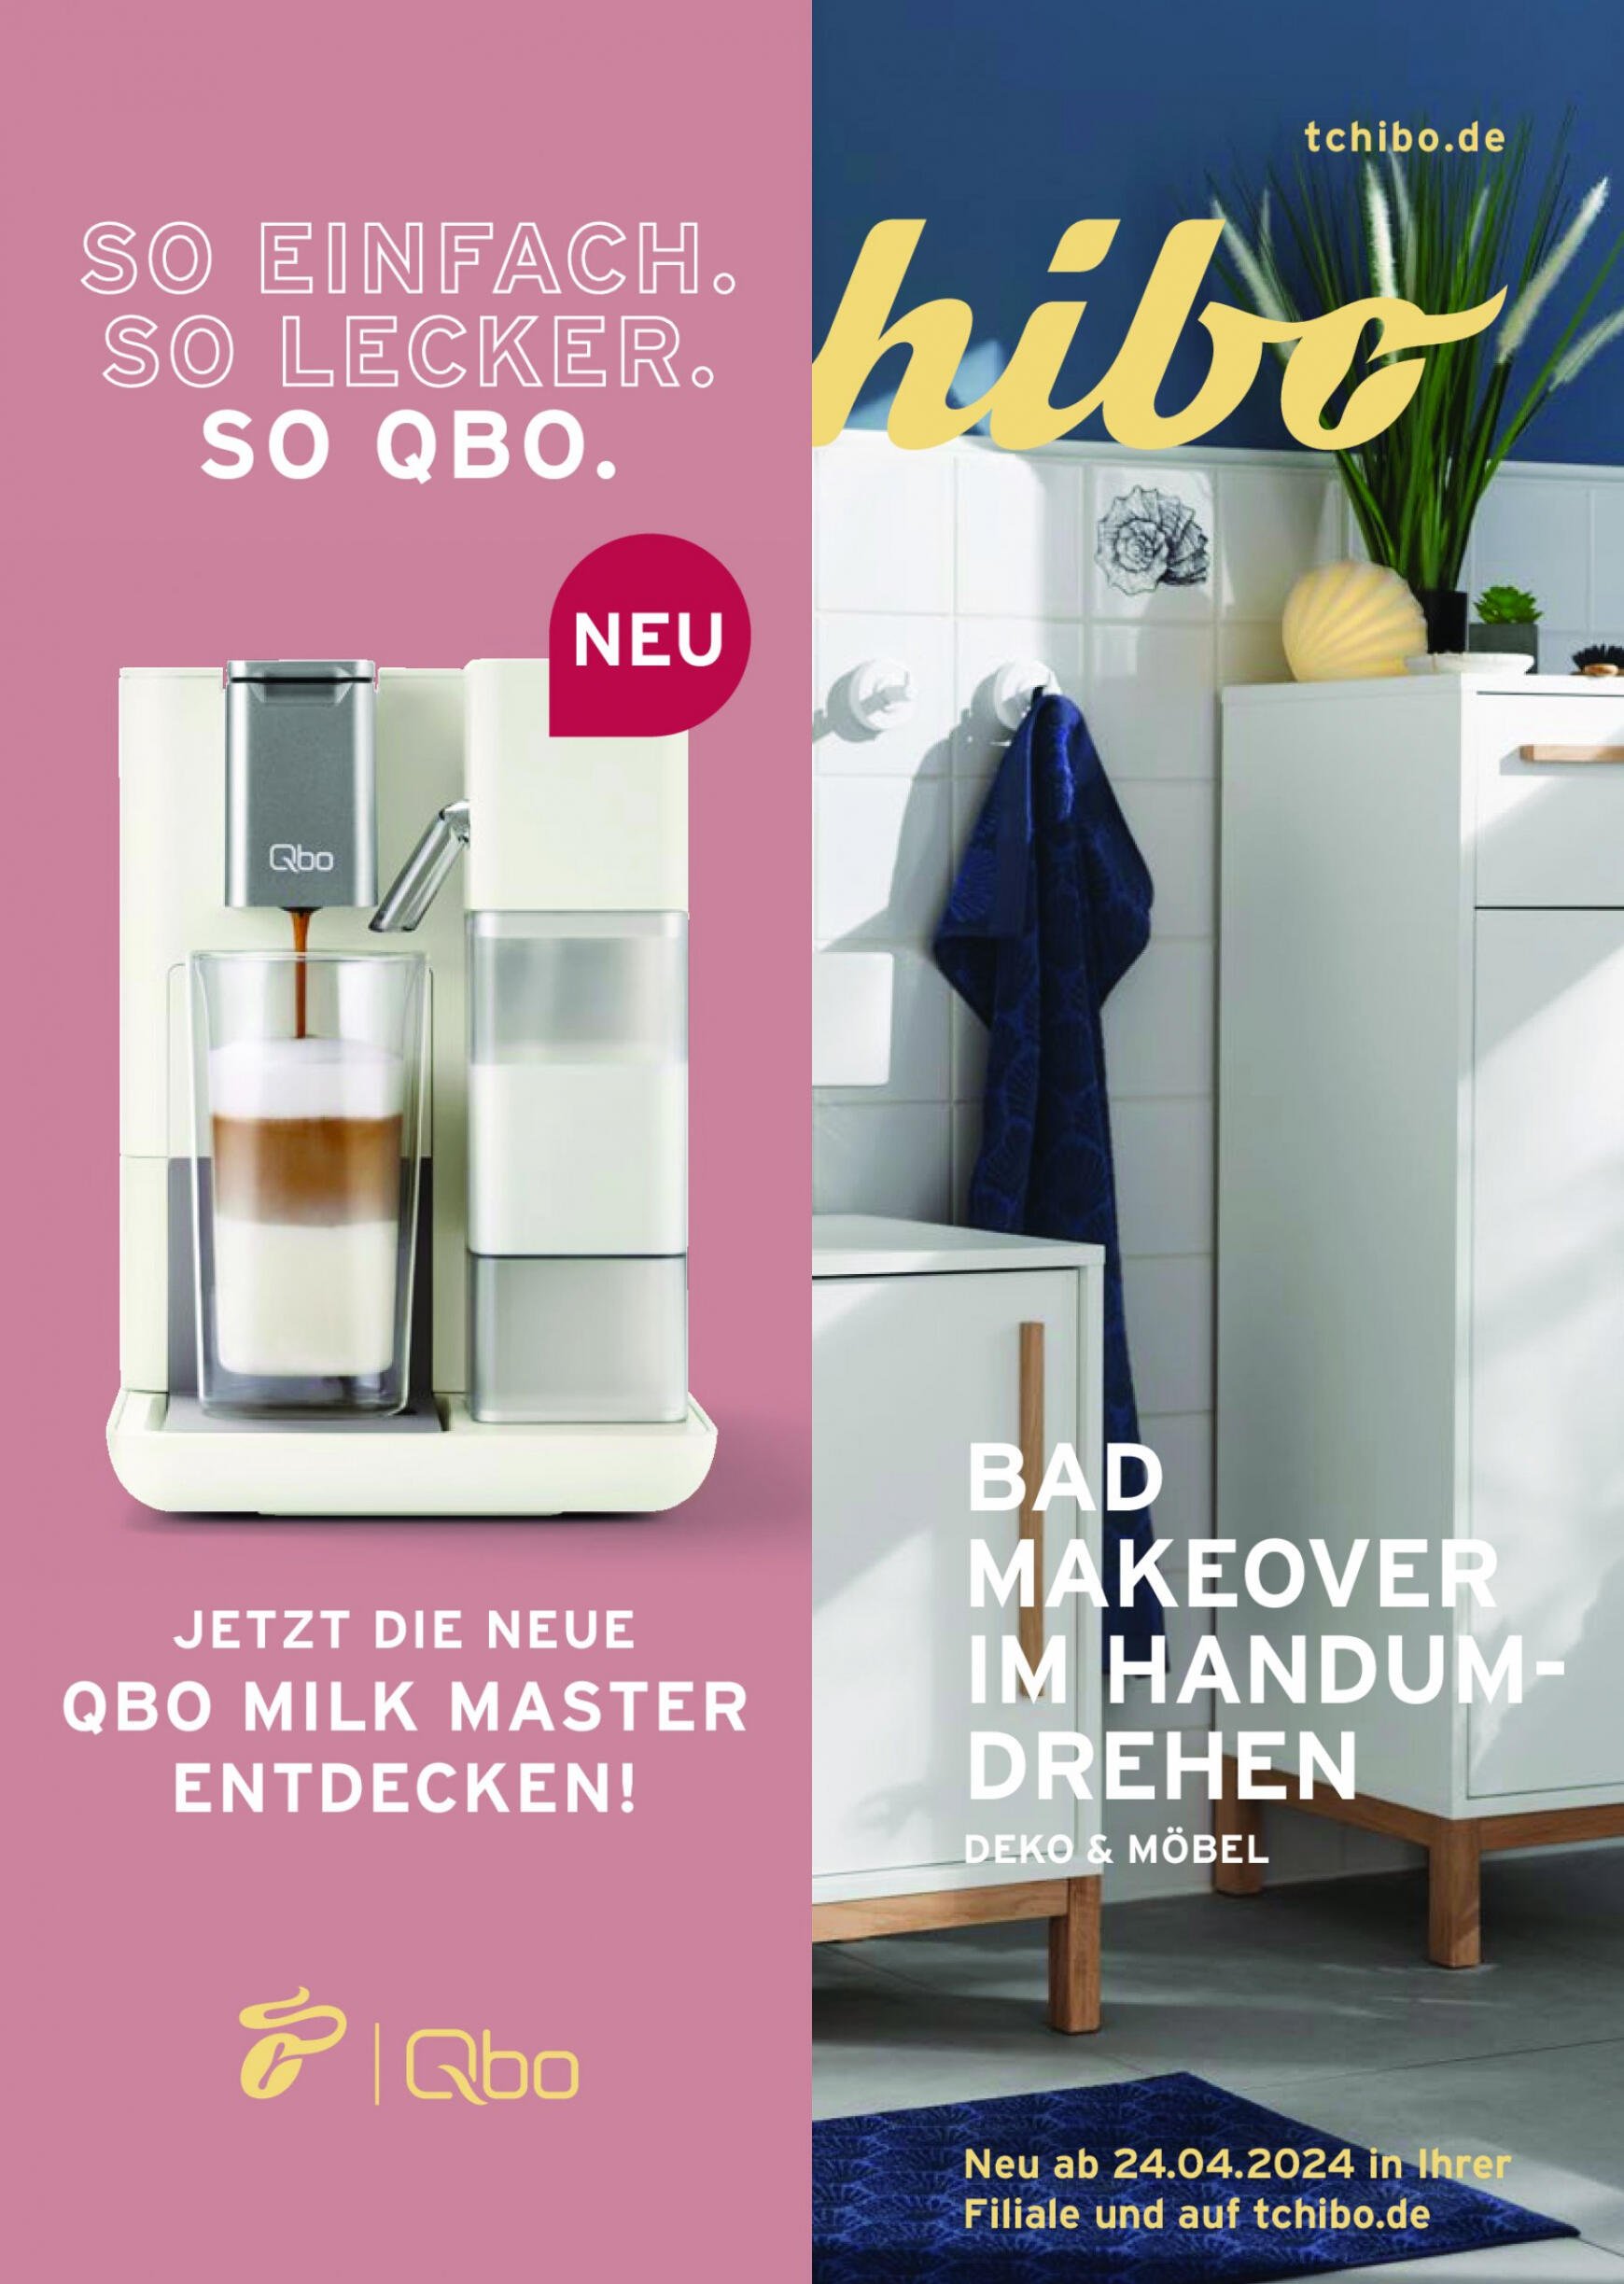 tchibo - Flyer Tchibo - Bad Makeover im Handumdrehen aktuell 18.04. - 24.04. - page: 1